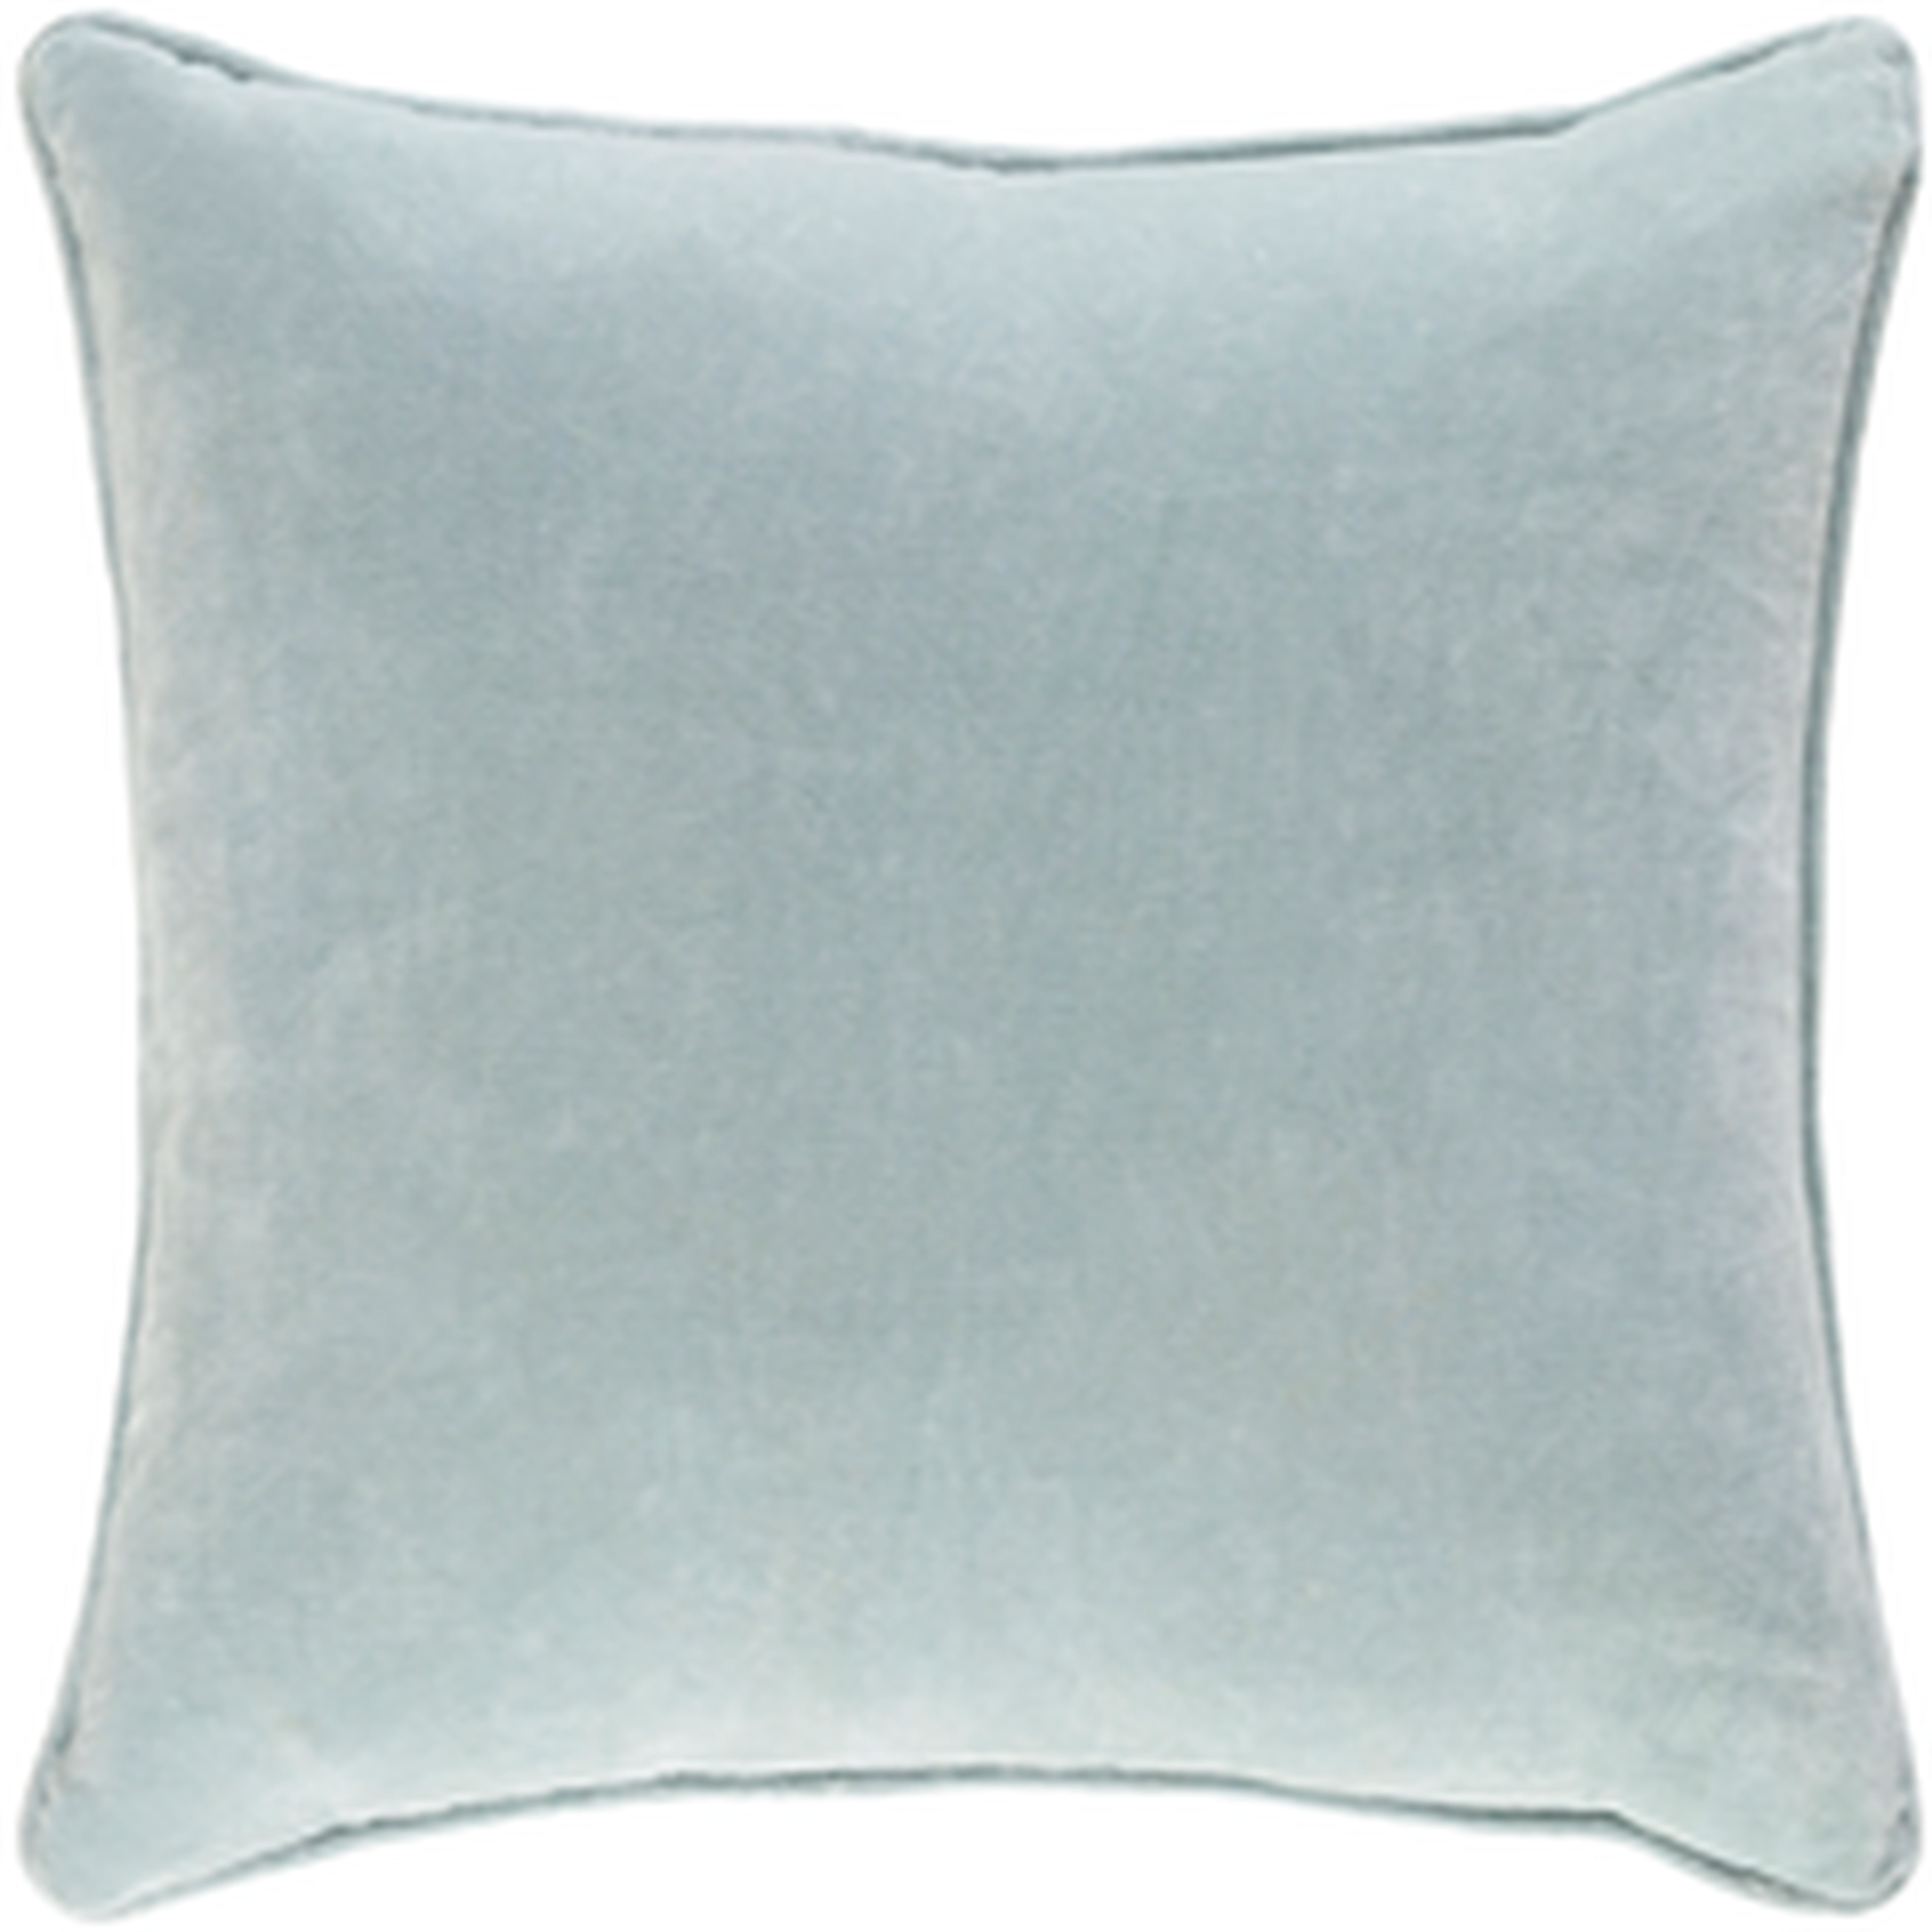 Safflower Pillow - Mint - 18" x 18", down insert - Surya